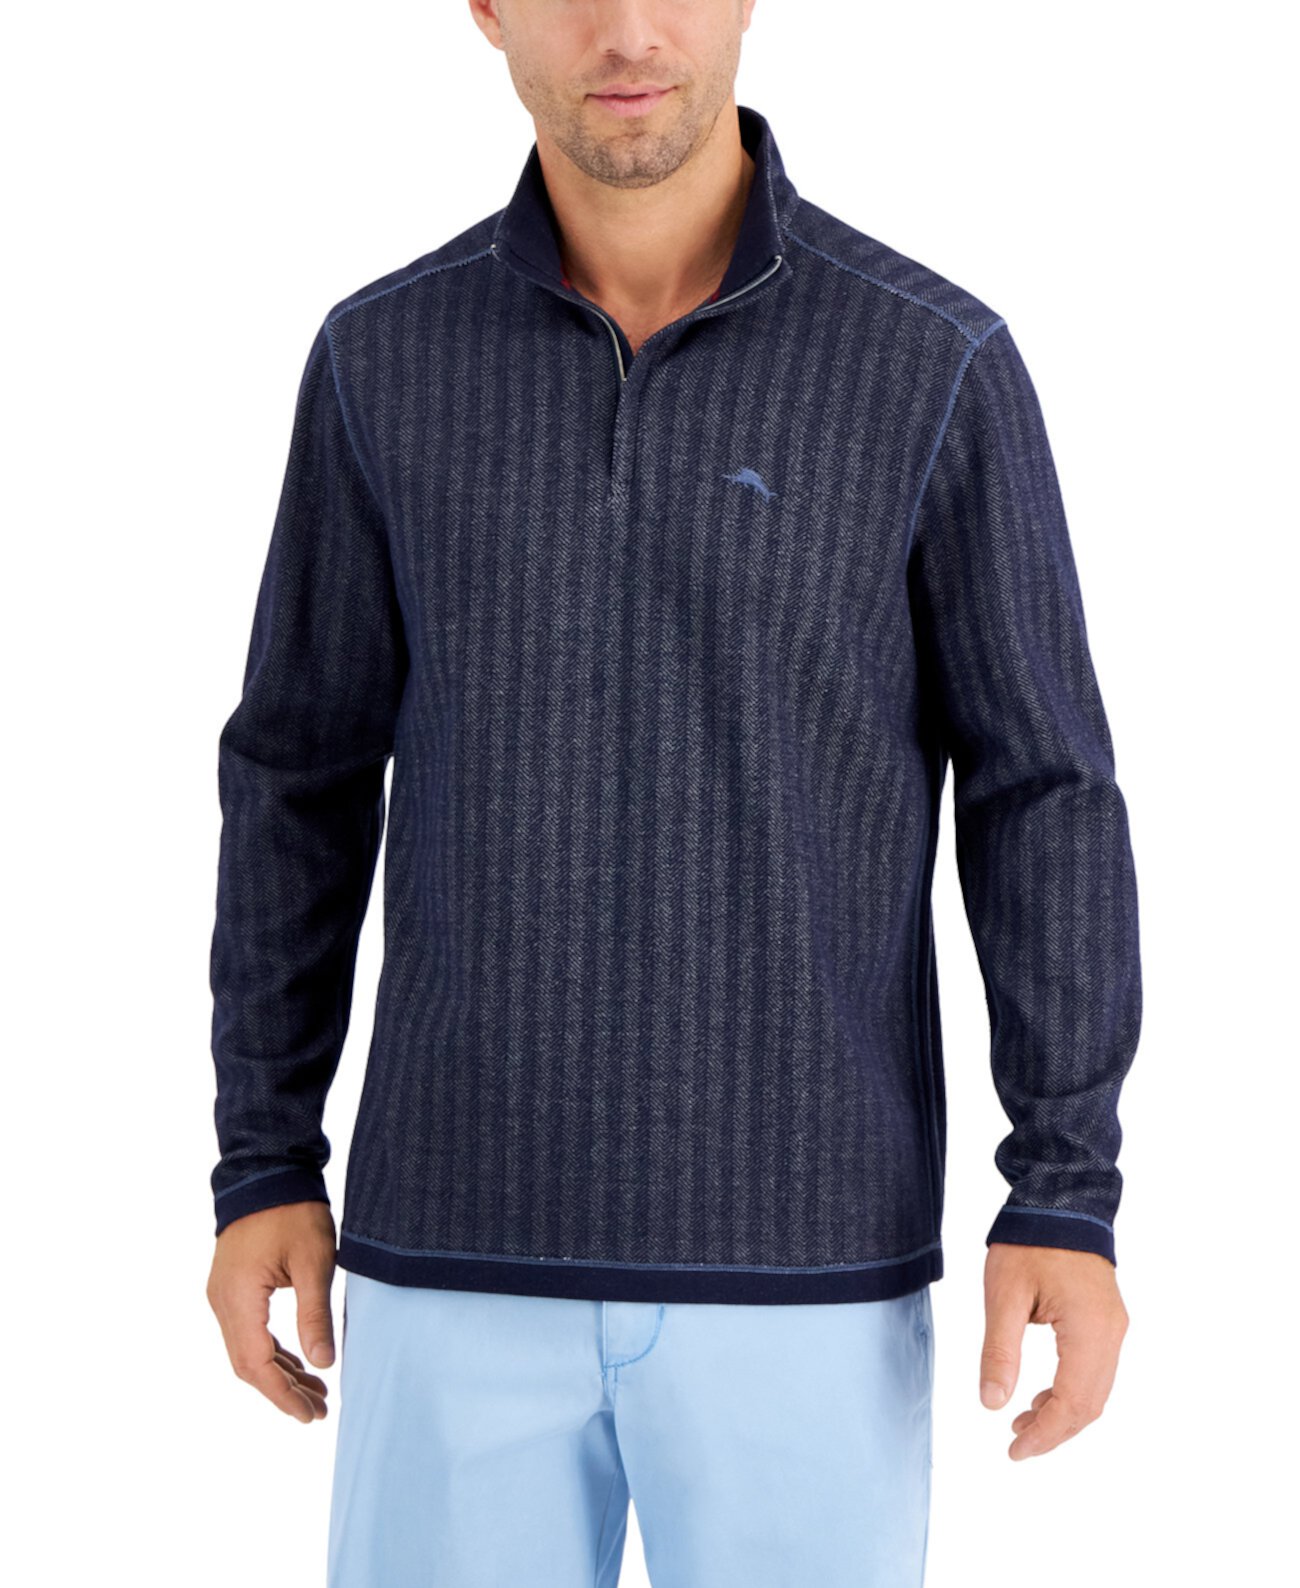 Мужской свитер с молнией на половину длины Playa Point, созданный для Macy's Tommy Bahama